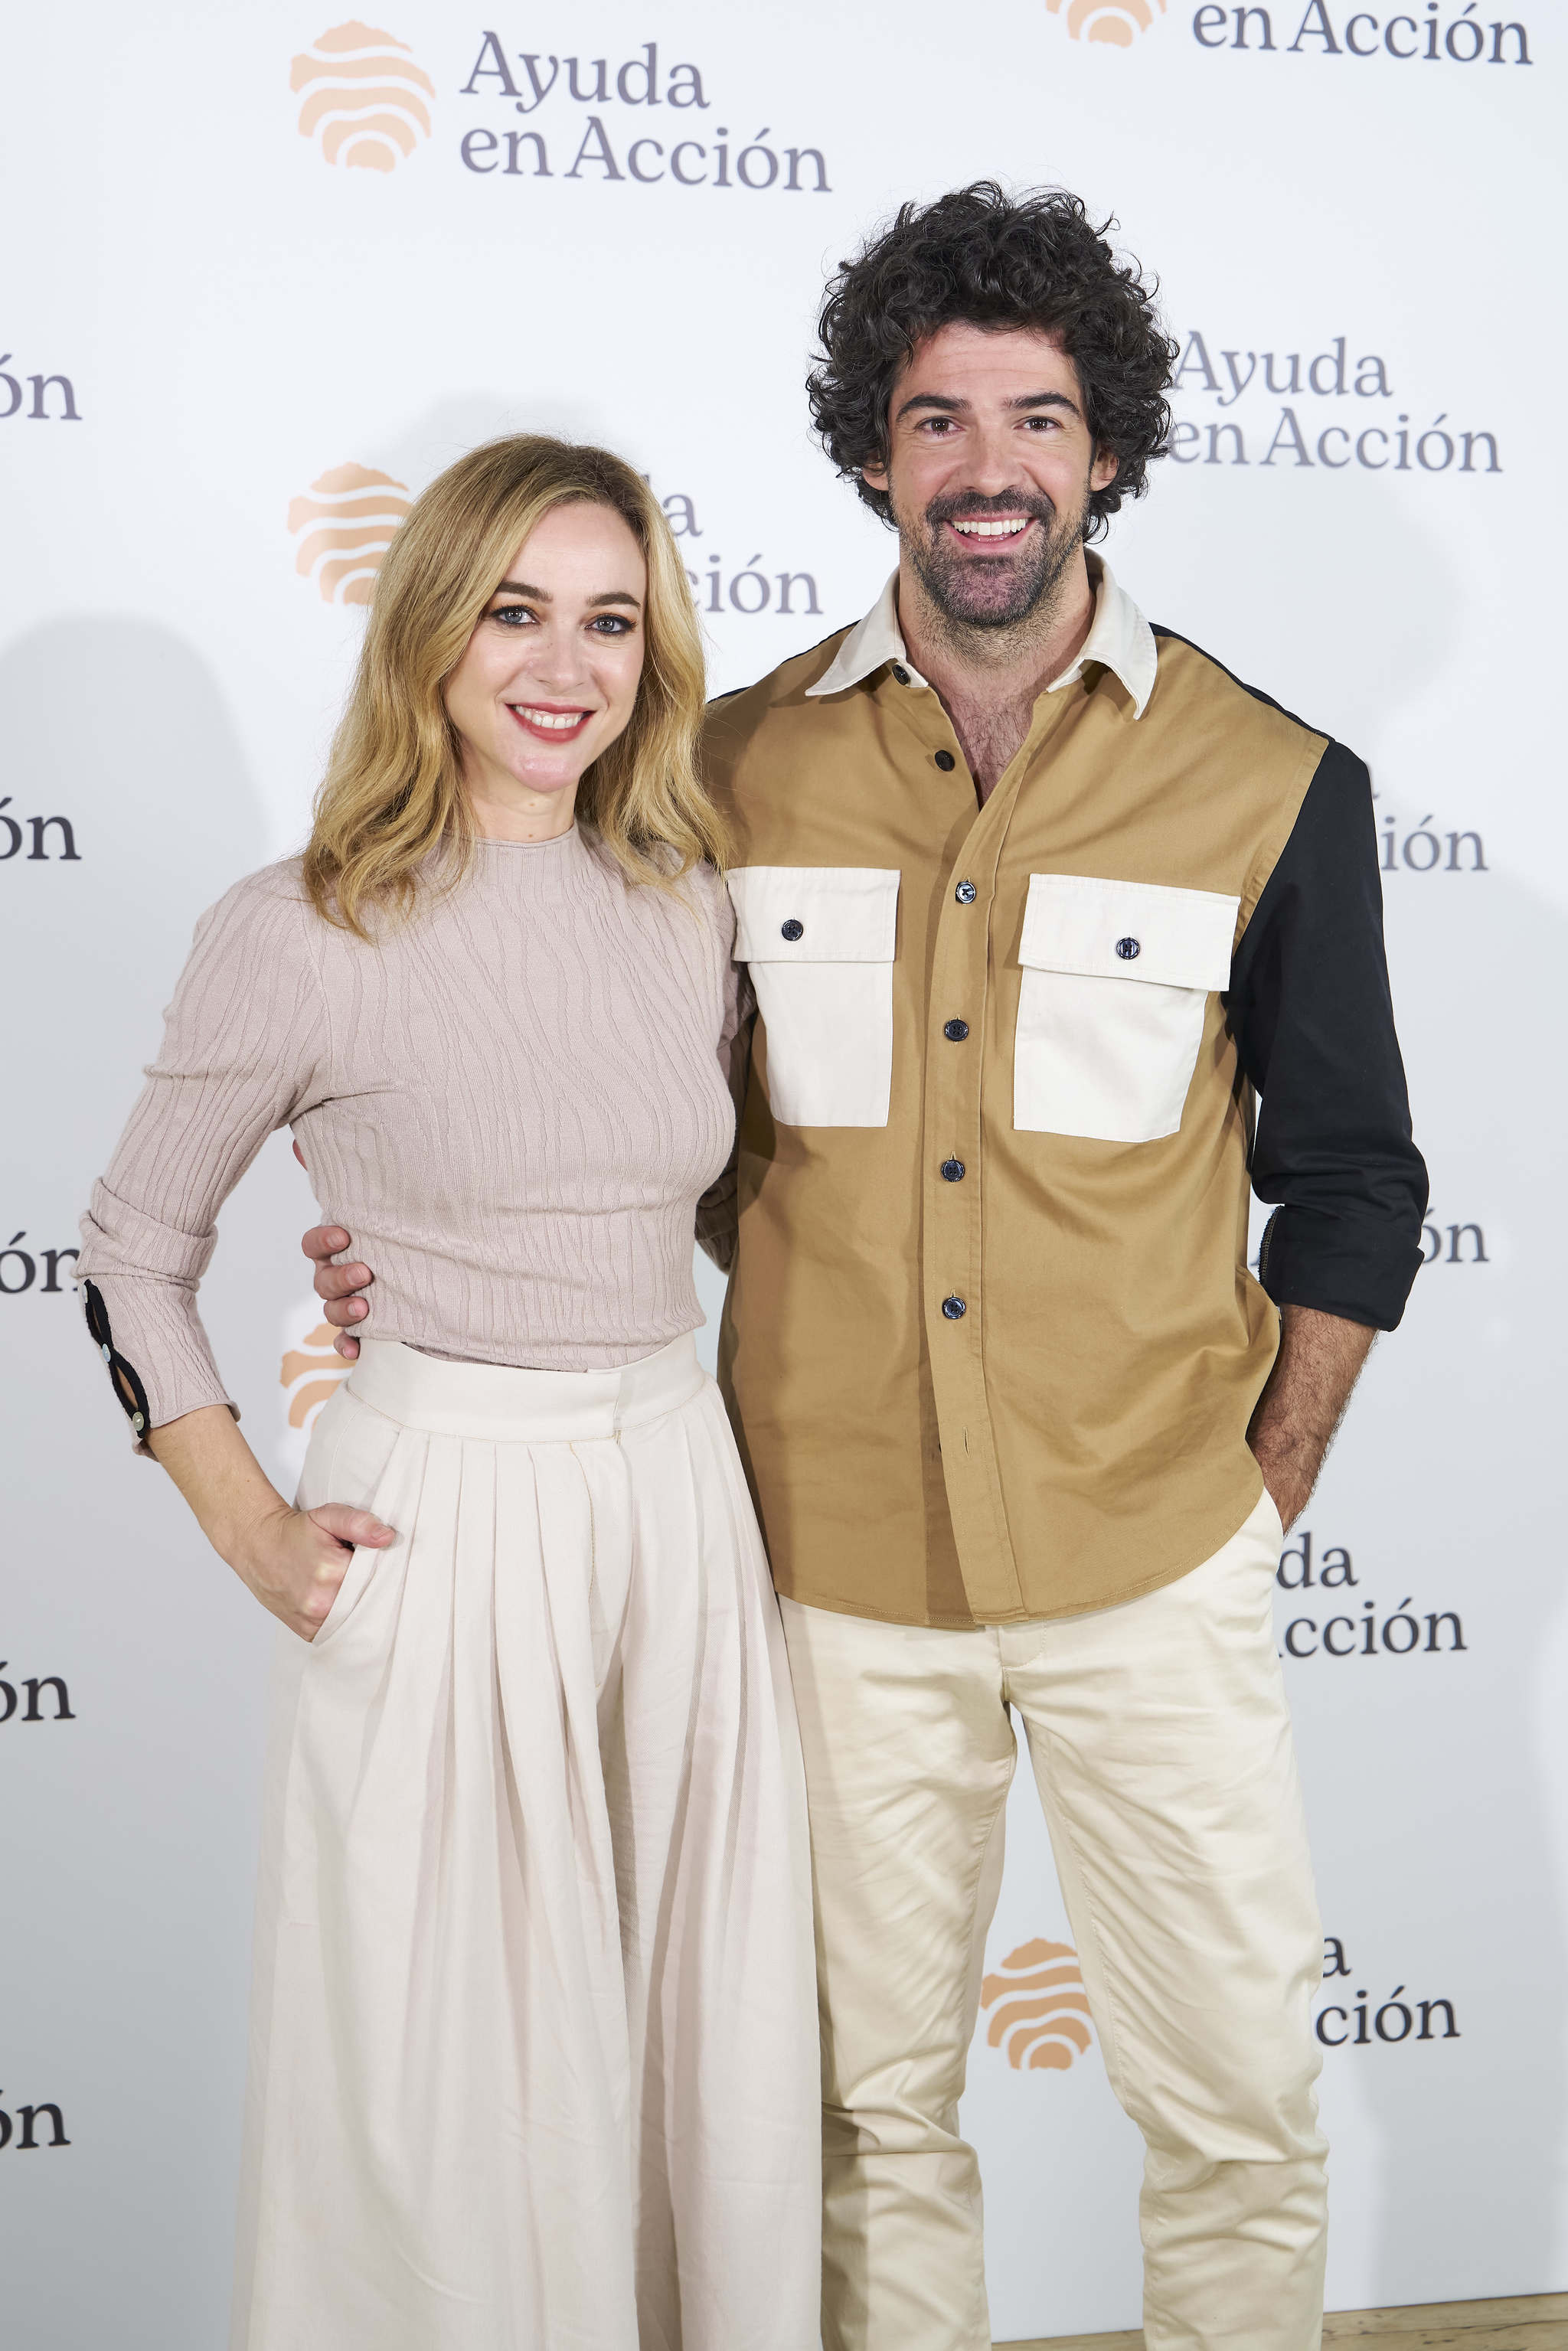 Marta Hazas y Miguel Ángel Muñoz, embajadores de Ayuda en Acción.